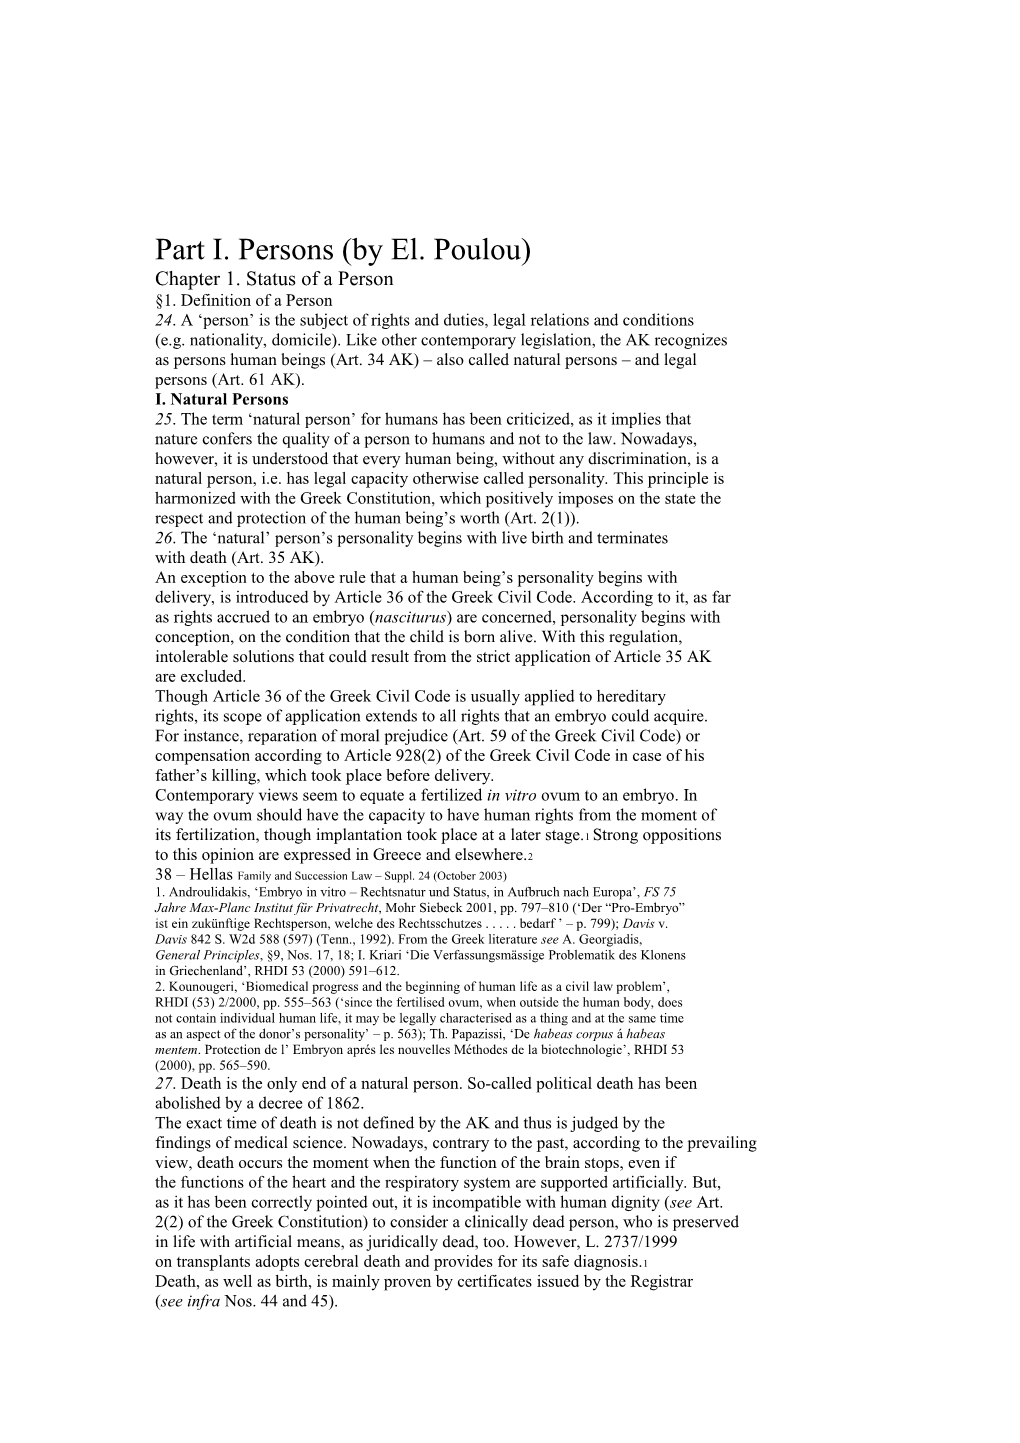 Part I. Persons (By El. Poulou)